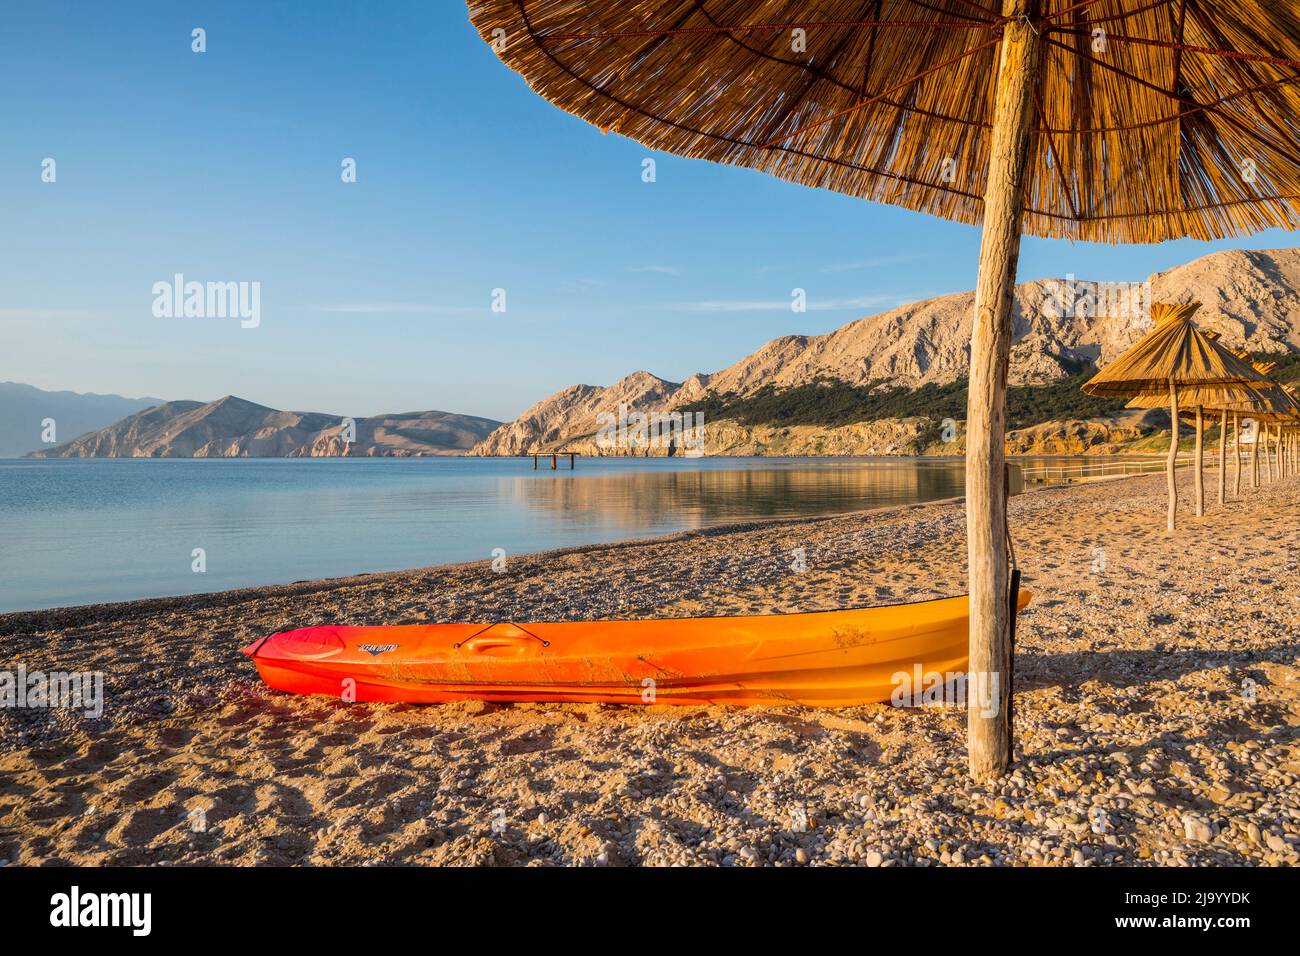 Kayak on the sand beach Stock Photo